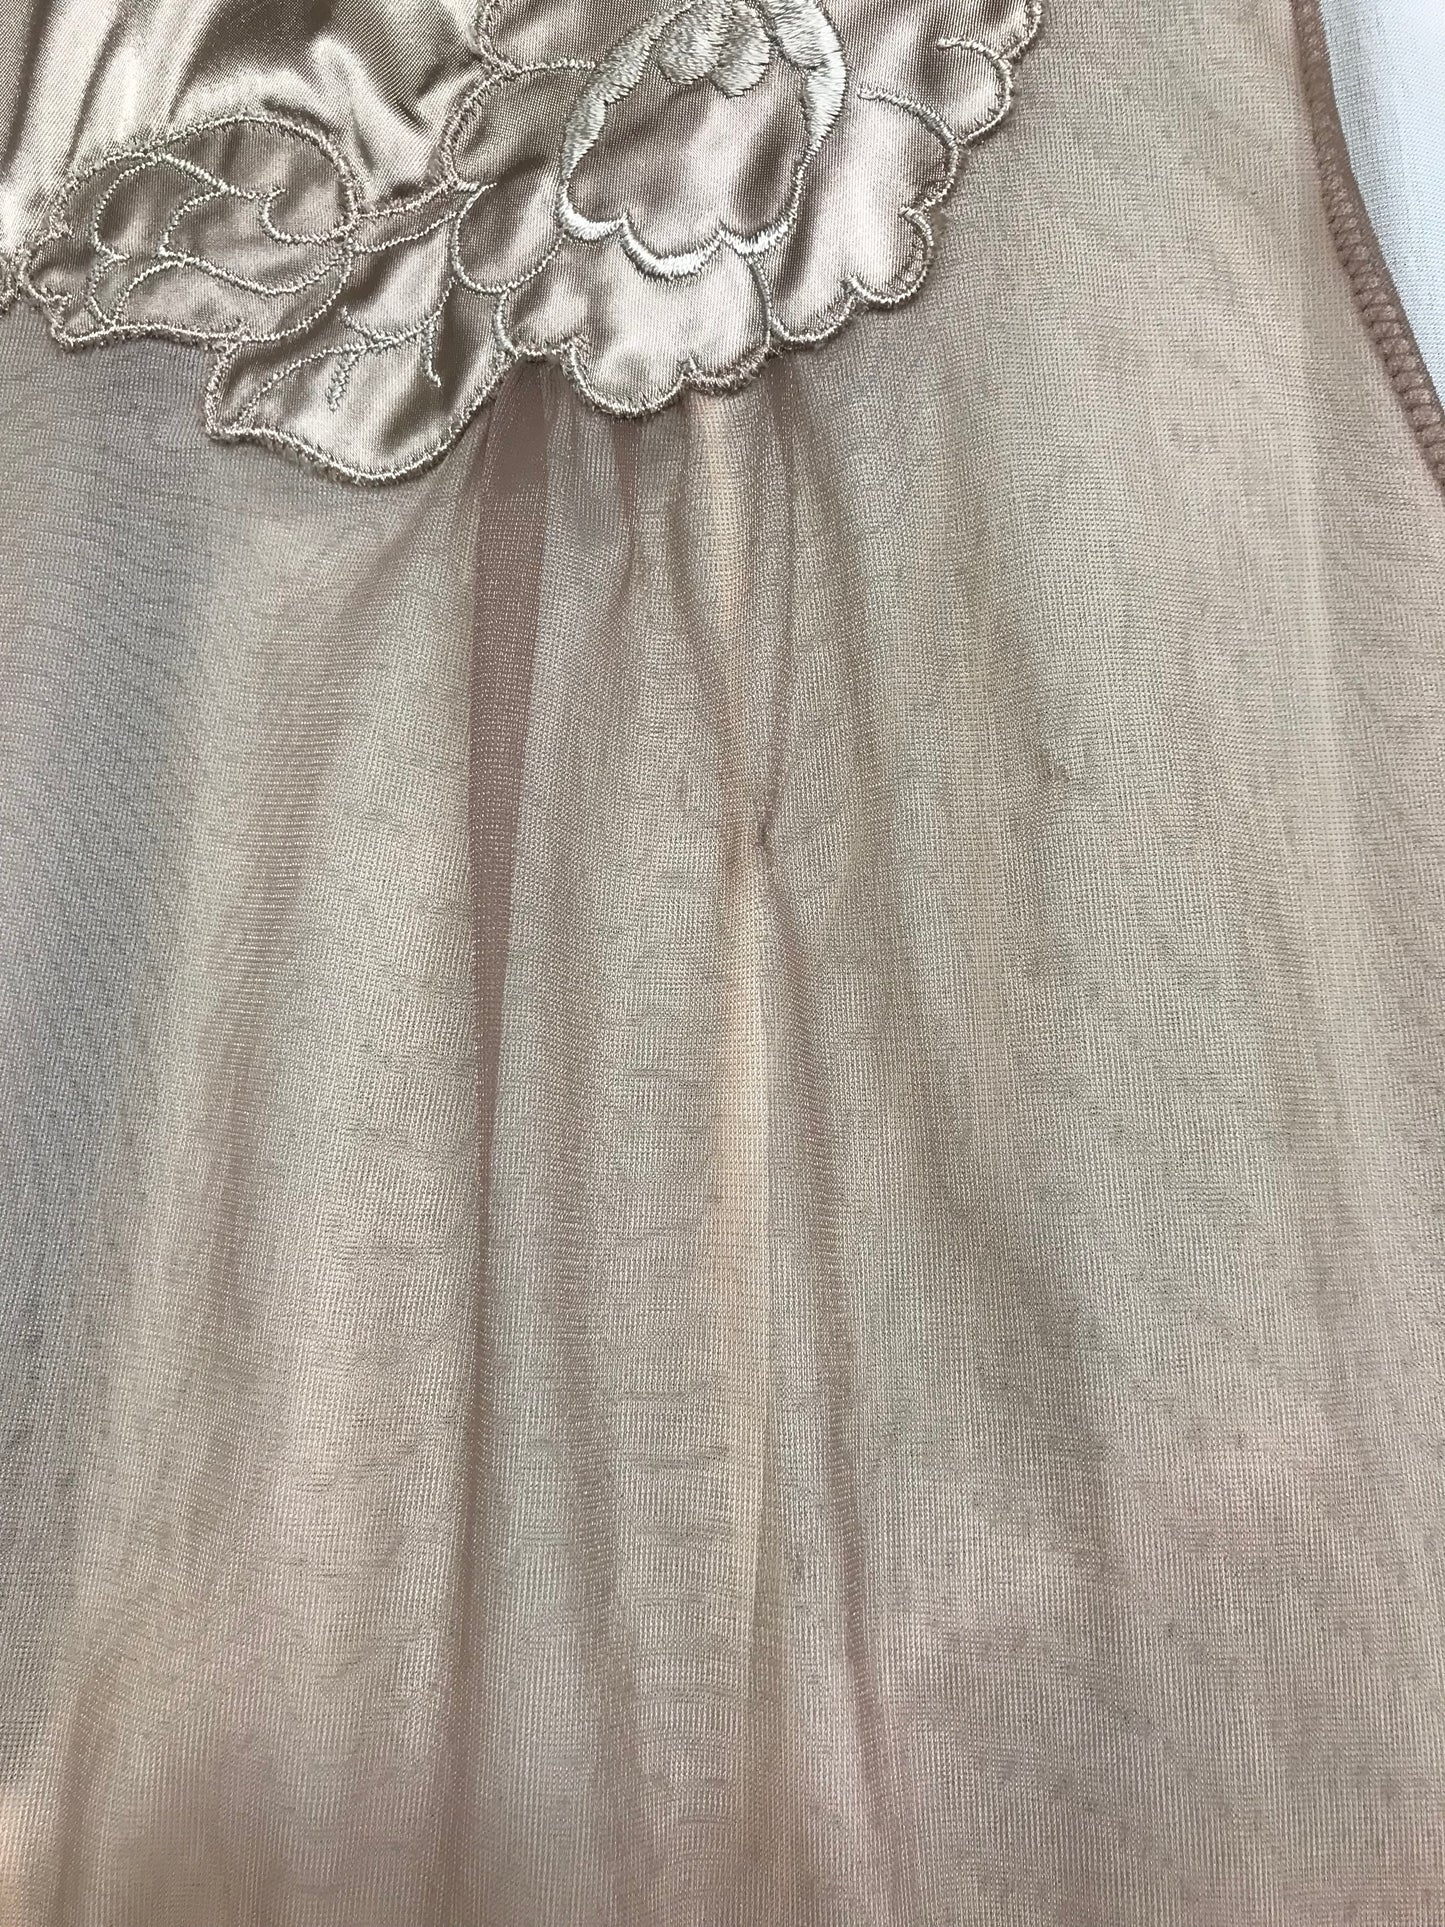 60s Vintage Lingerie Dress [I25048]